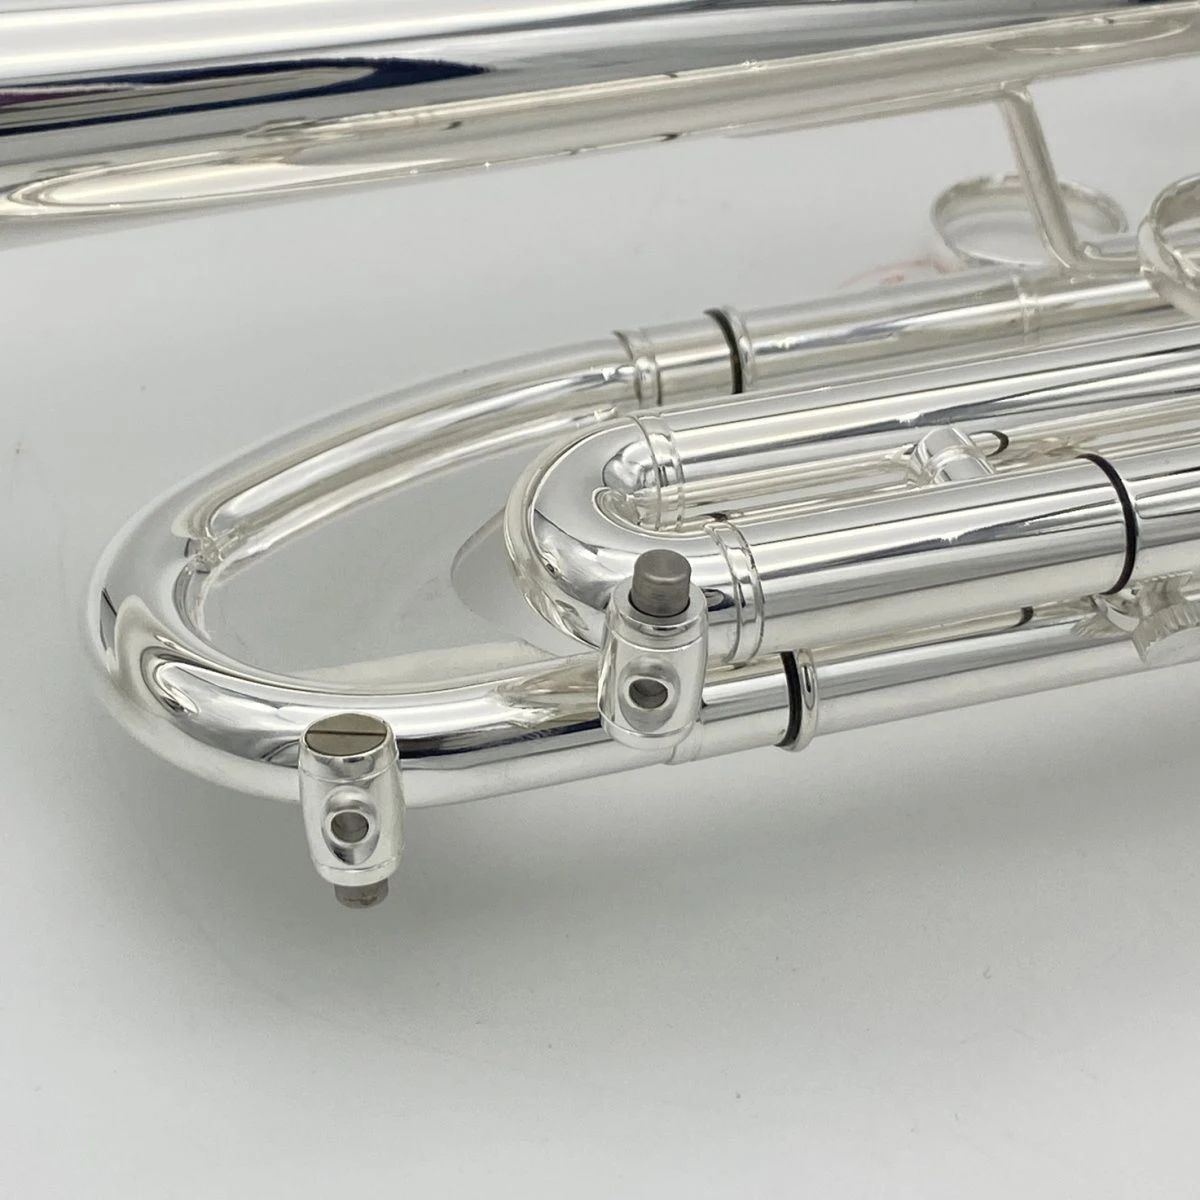 Il nuovo strumento europeo a tromba aggravato B-tune placcato in argento i principianti può suonare una tromba professionale in ottone a livello di esame